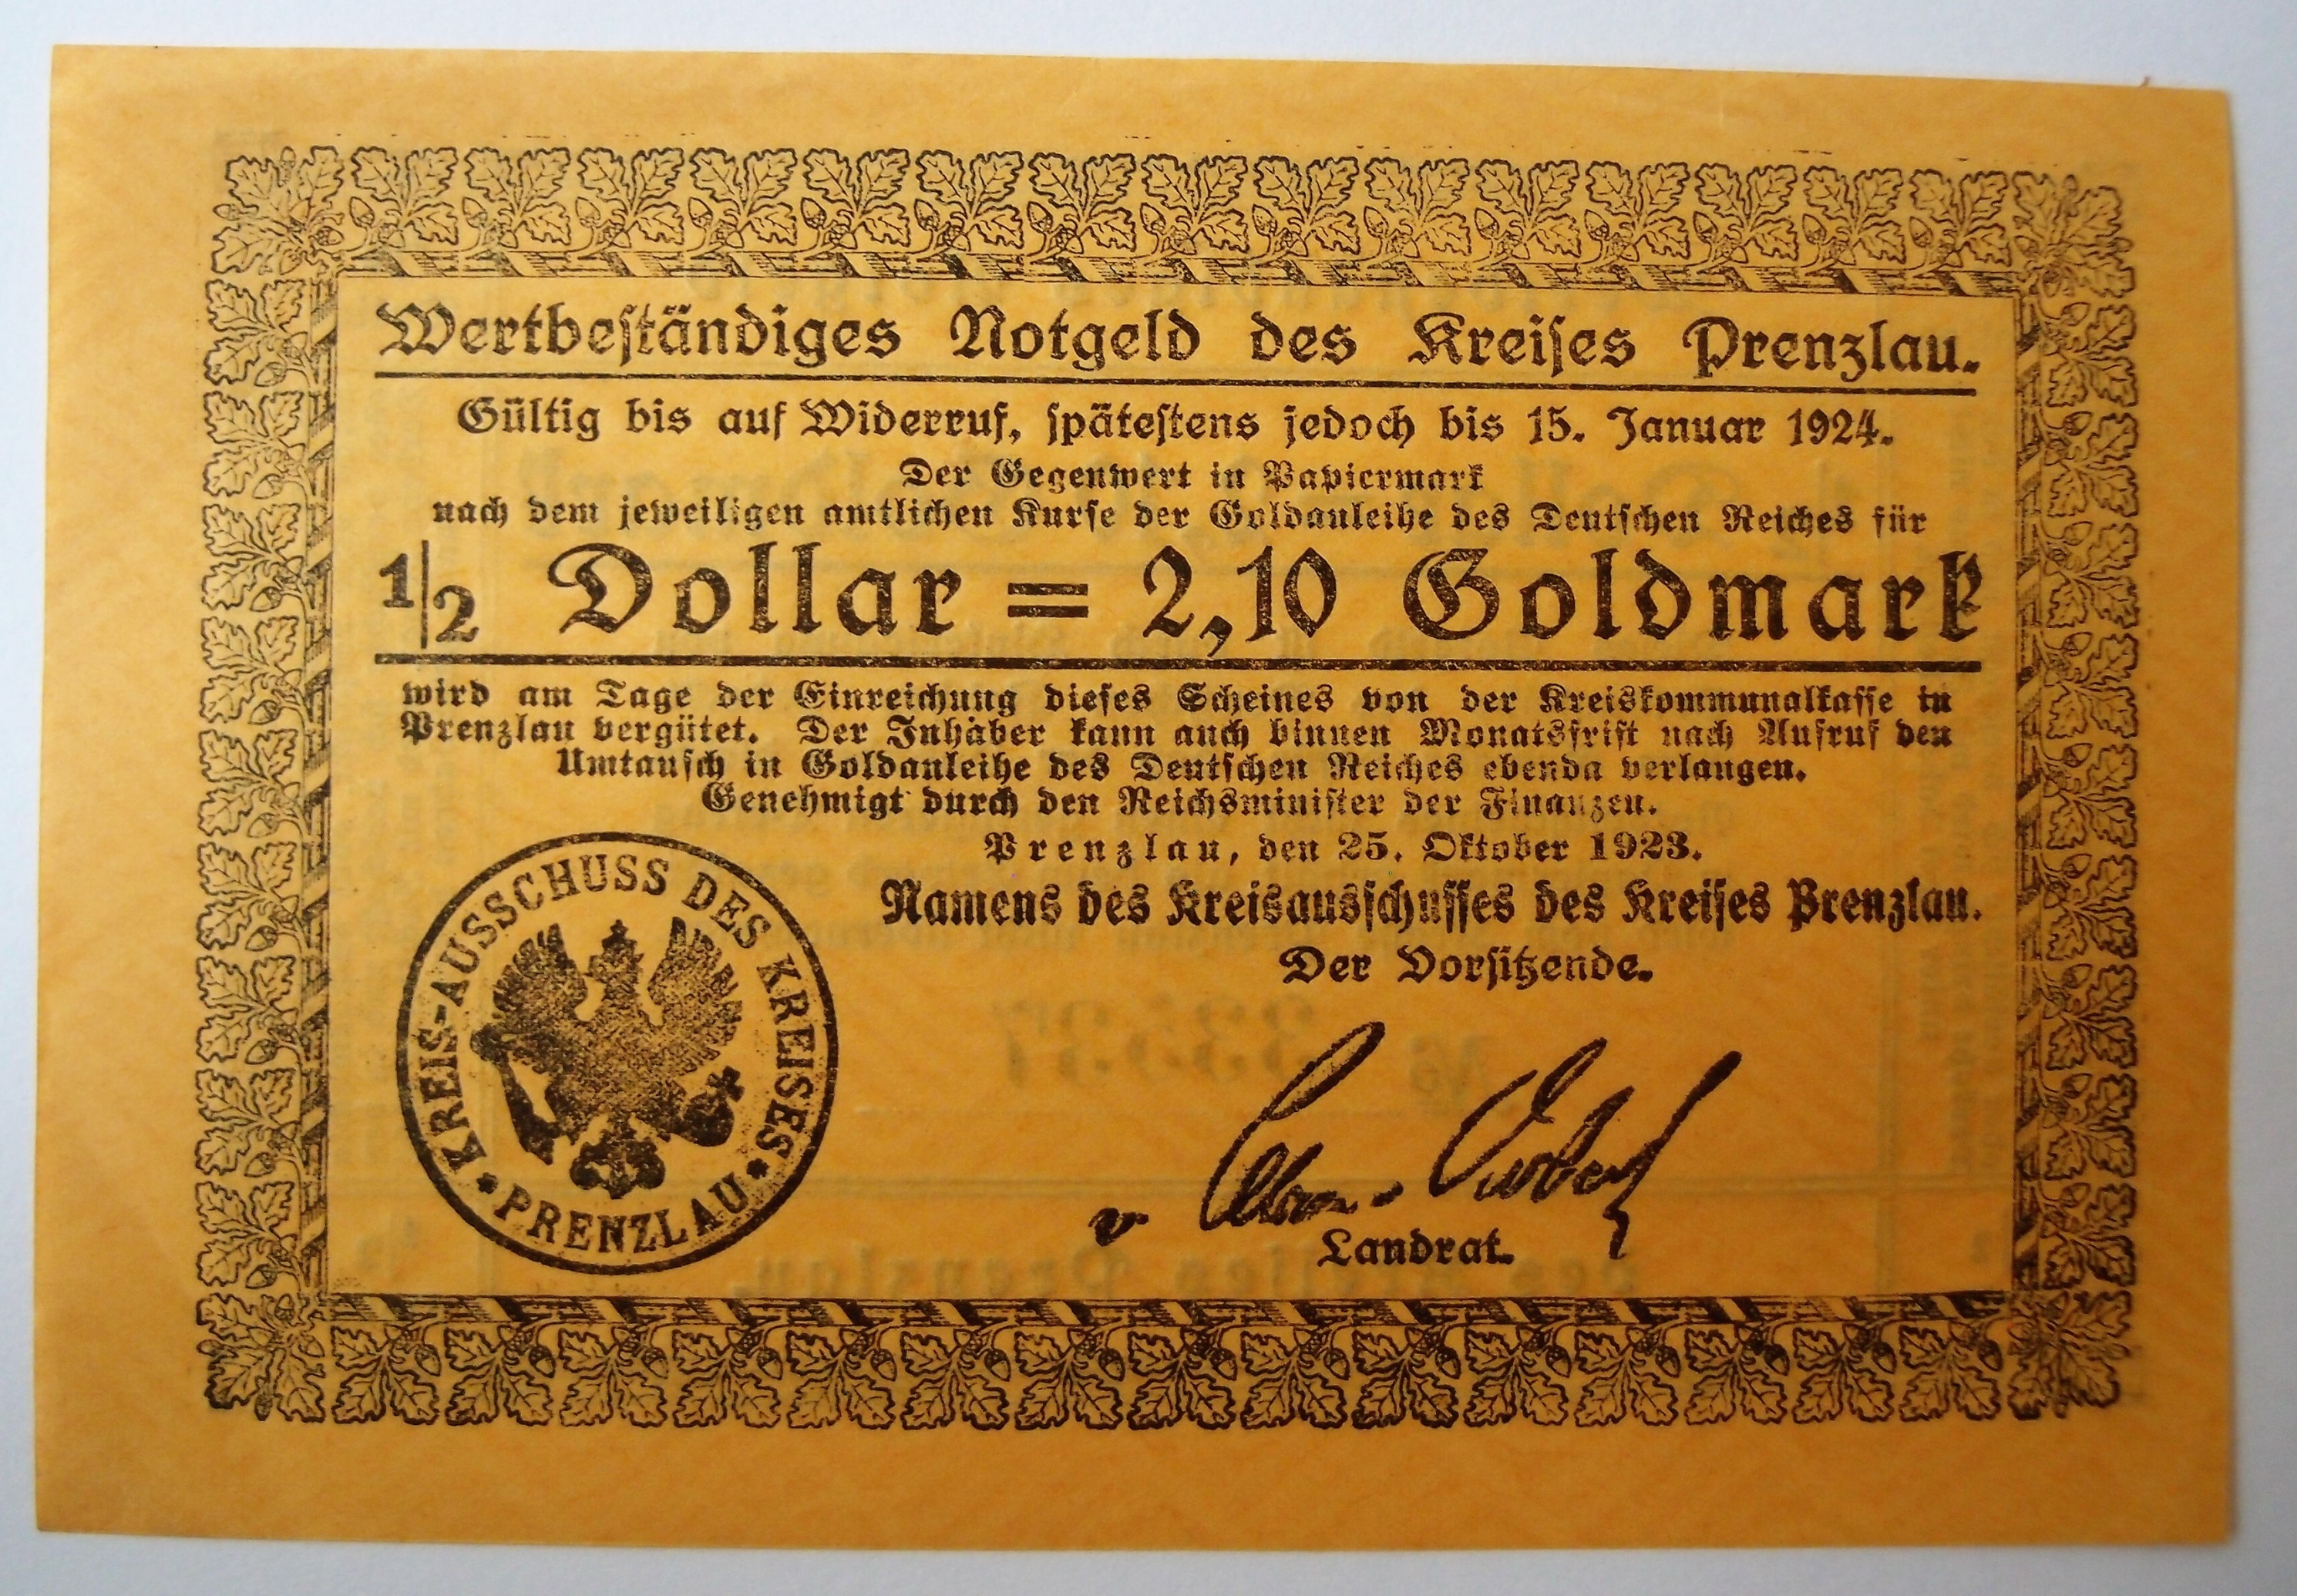 Wertbeständiges Notgeld des Kreises Prenzlau (Museum für Stadtgeschichte Templin CC BY-NC-SA)